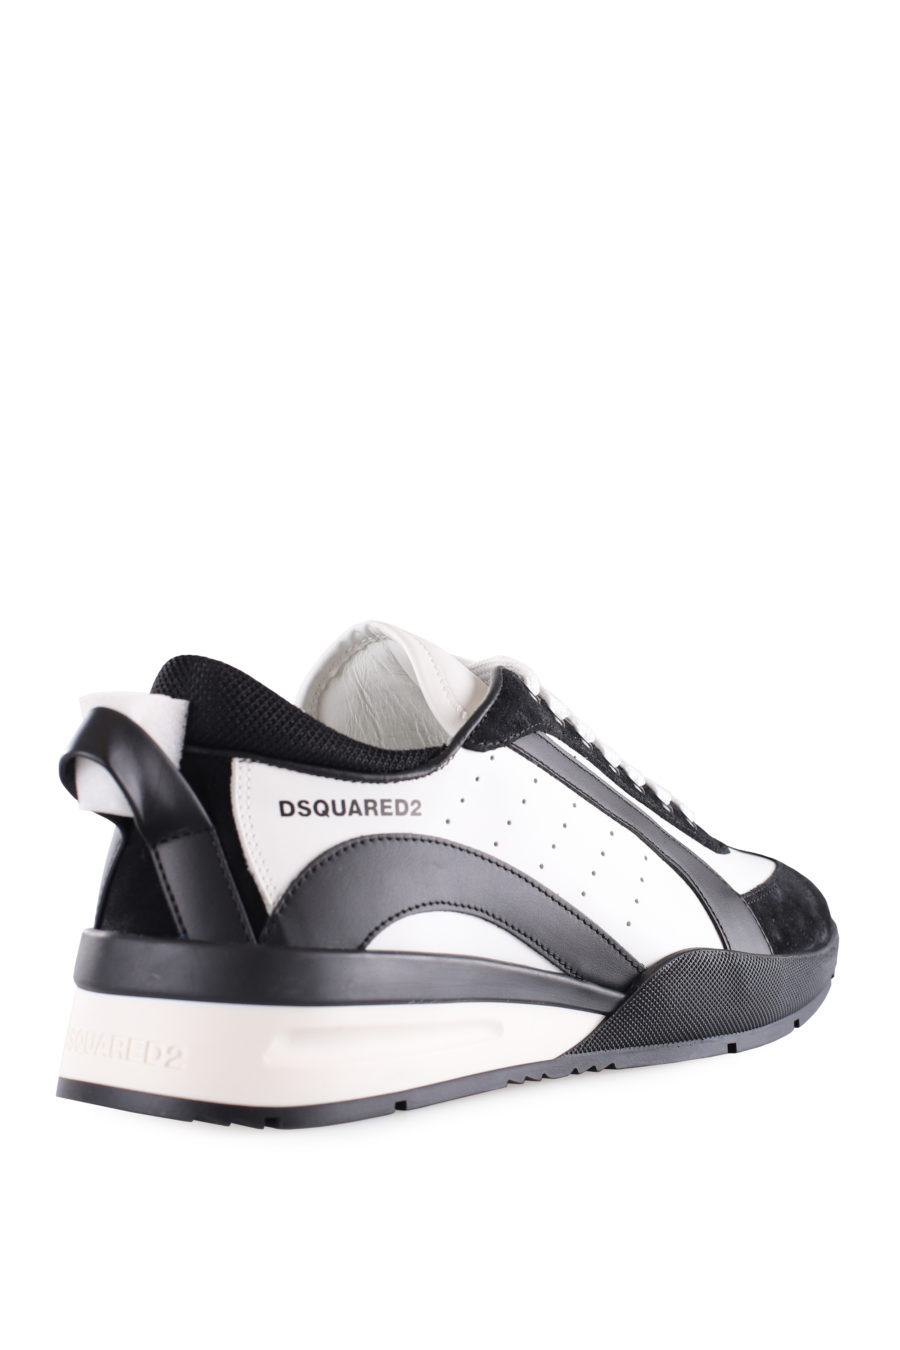 Zapatillas blancas con detalles negros y logo pequeño - IMG 9504